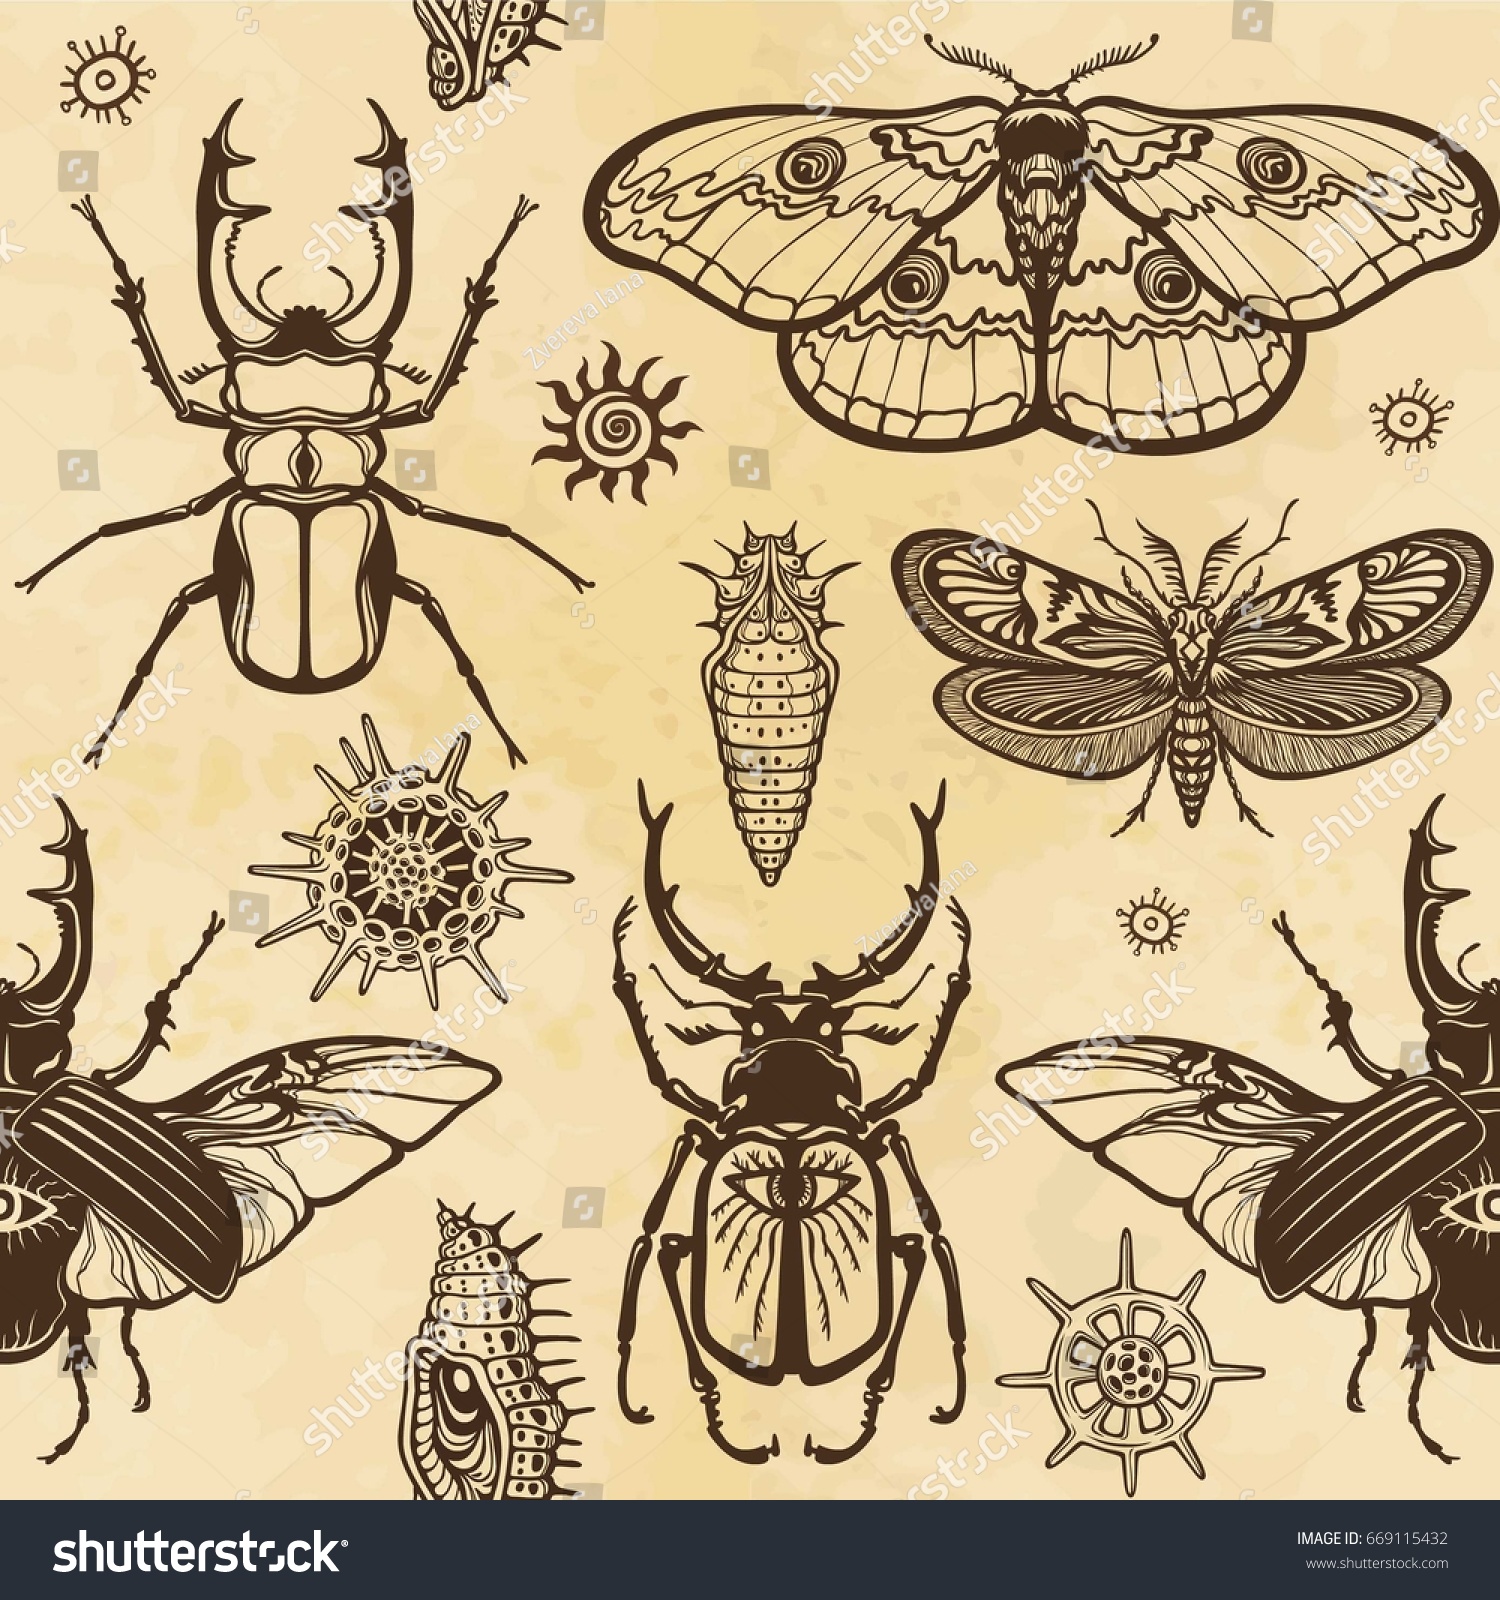 Изображение насекомых на ткани